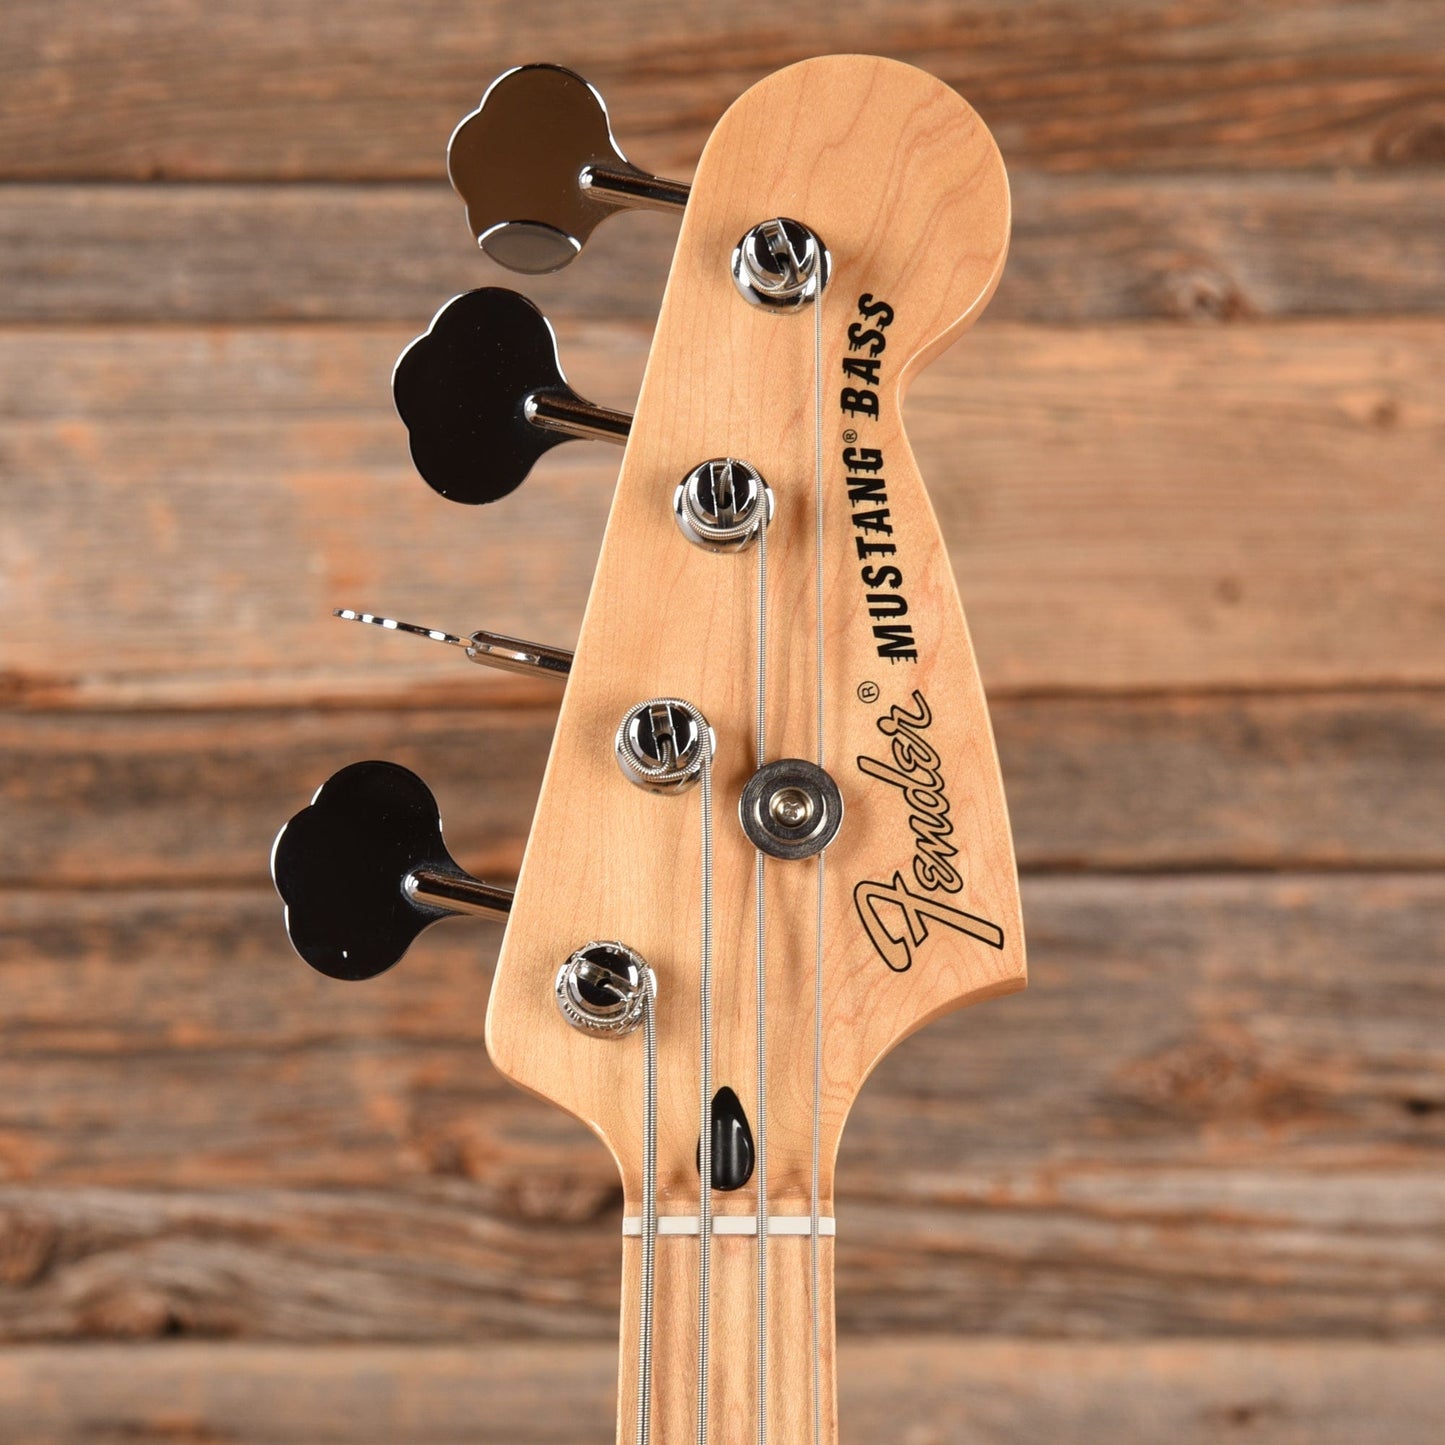 Fender Player Mustang PJ Bass Tidepool 2019 Bass Guitars / 4-String